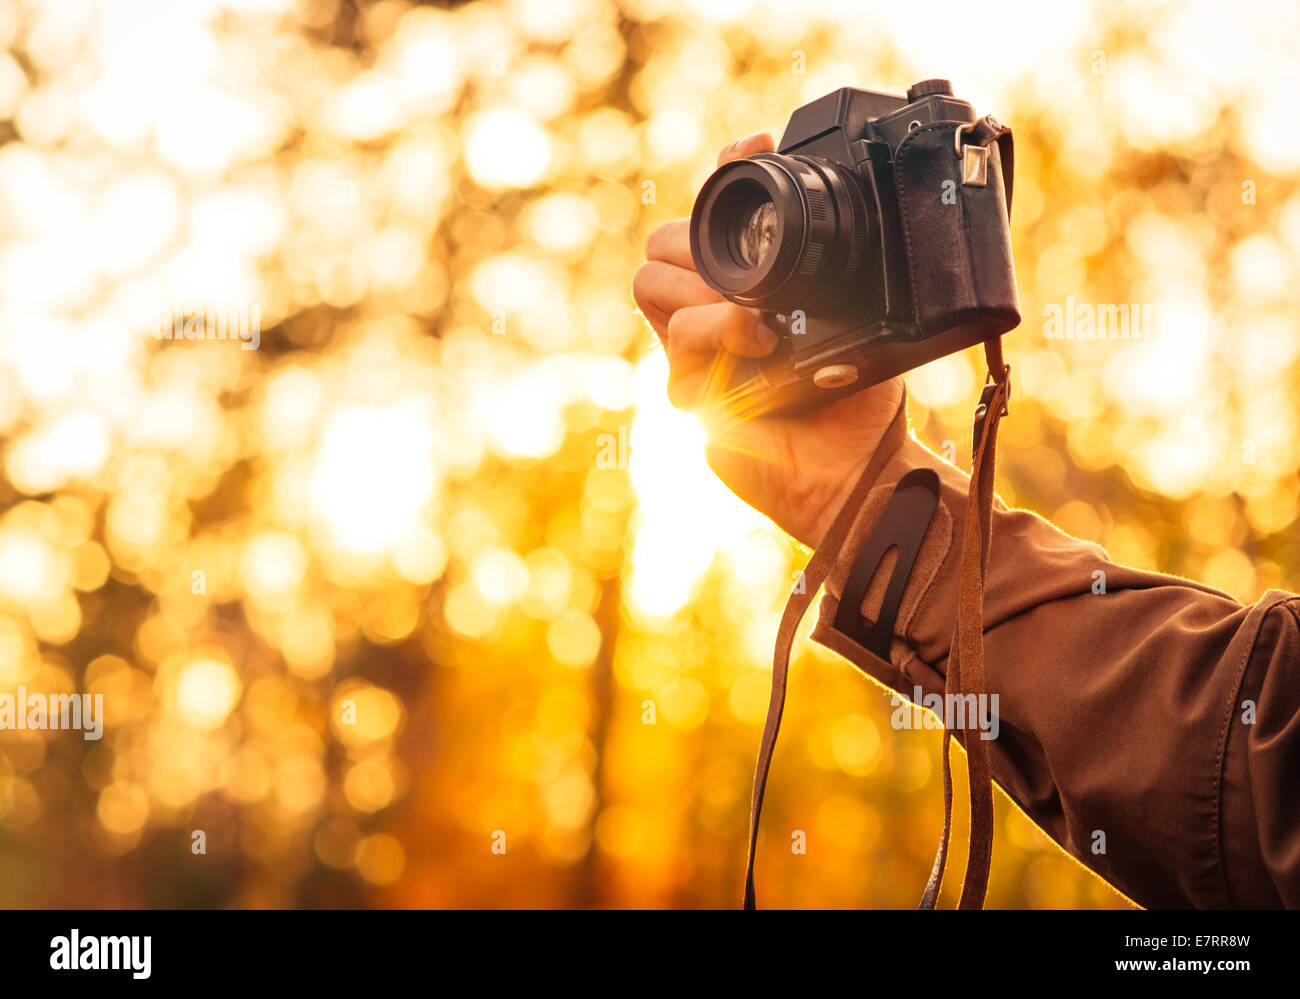 Man mano che tiene retrò fotocamera foto Outdoor Lifestyle concetto con sole illumina bokeh di fondo la natura in autunno su sfondo Foto Stock